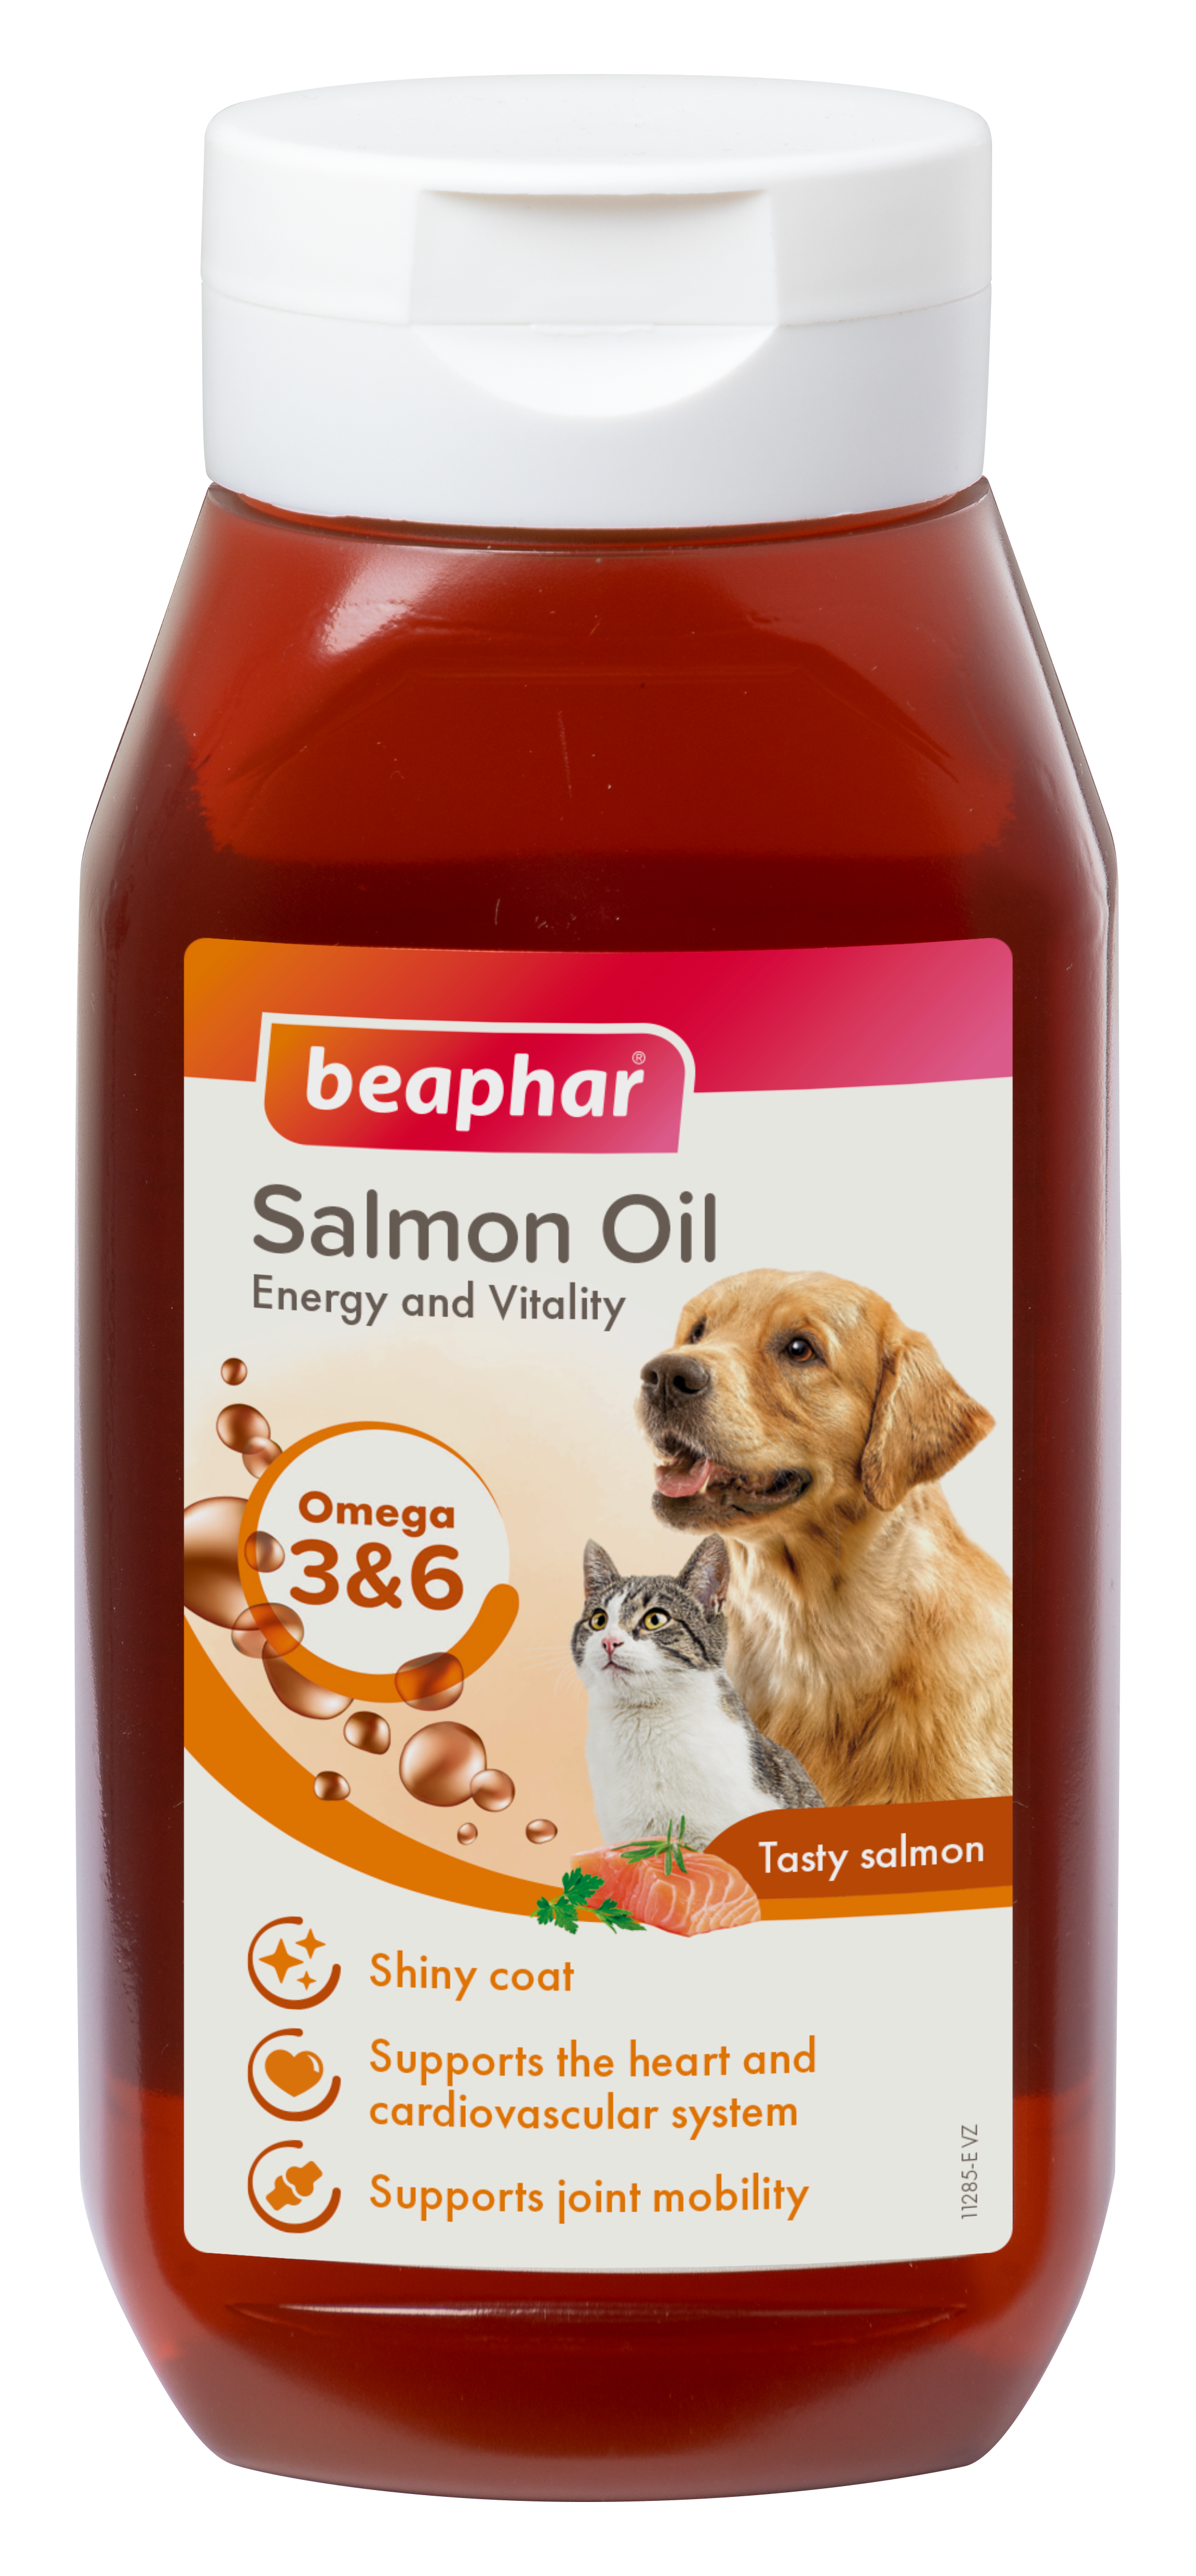 Beaphar Salmon Oil – Omega 3 for Dogs & Cat